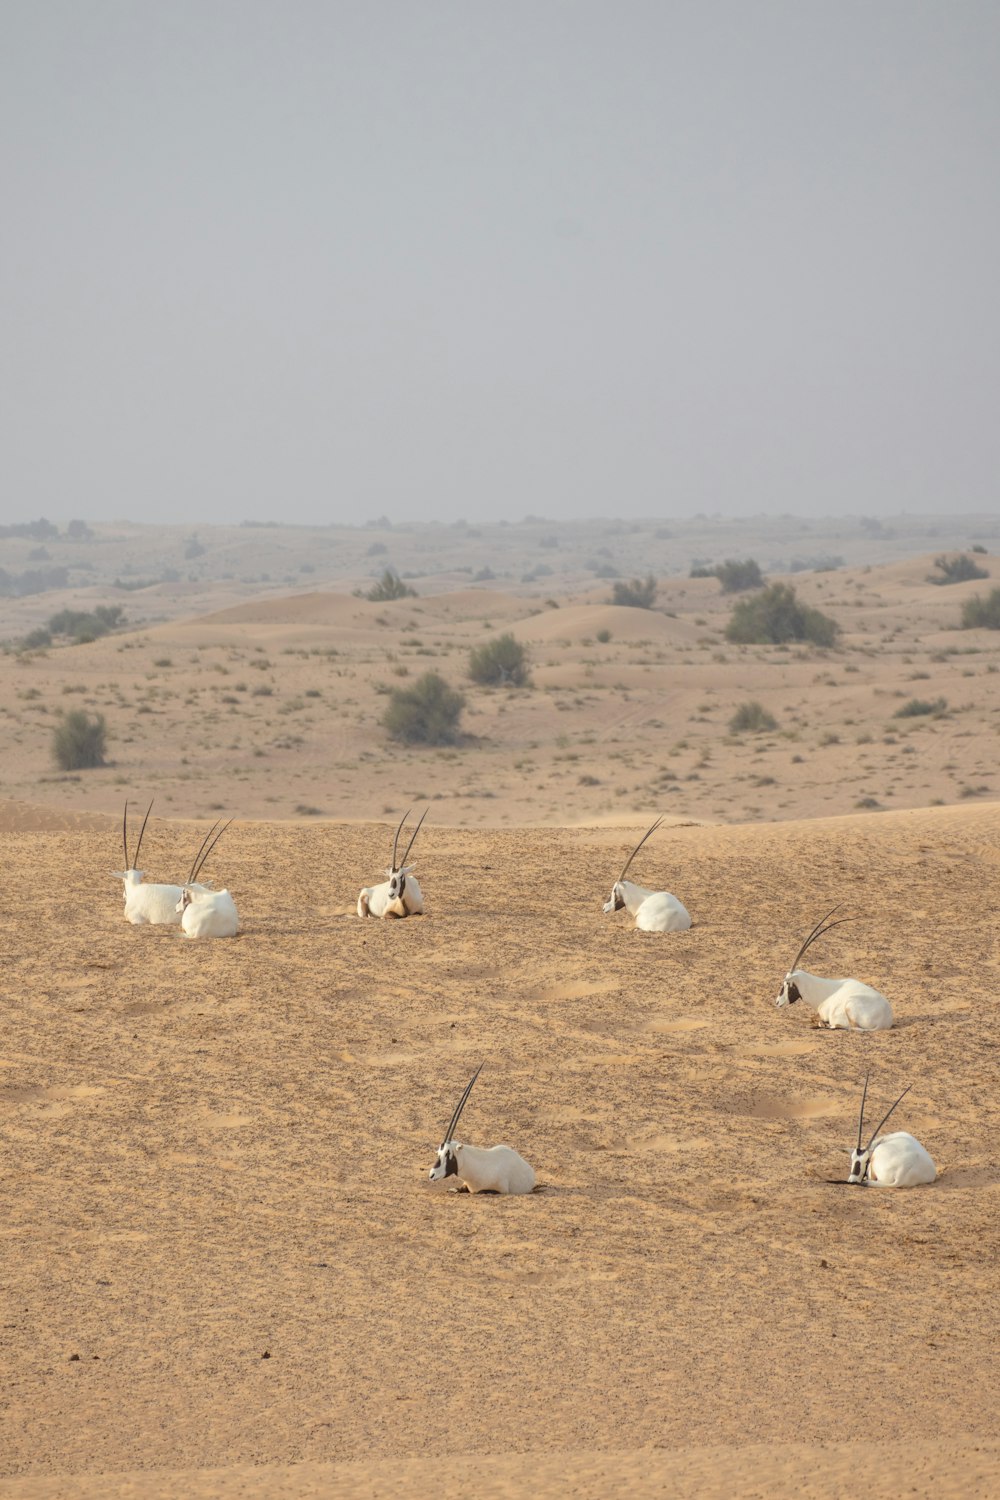 a herd of antelope in the desert